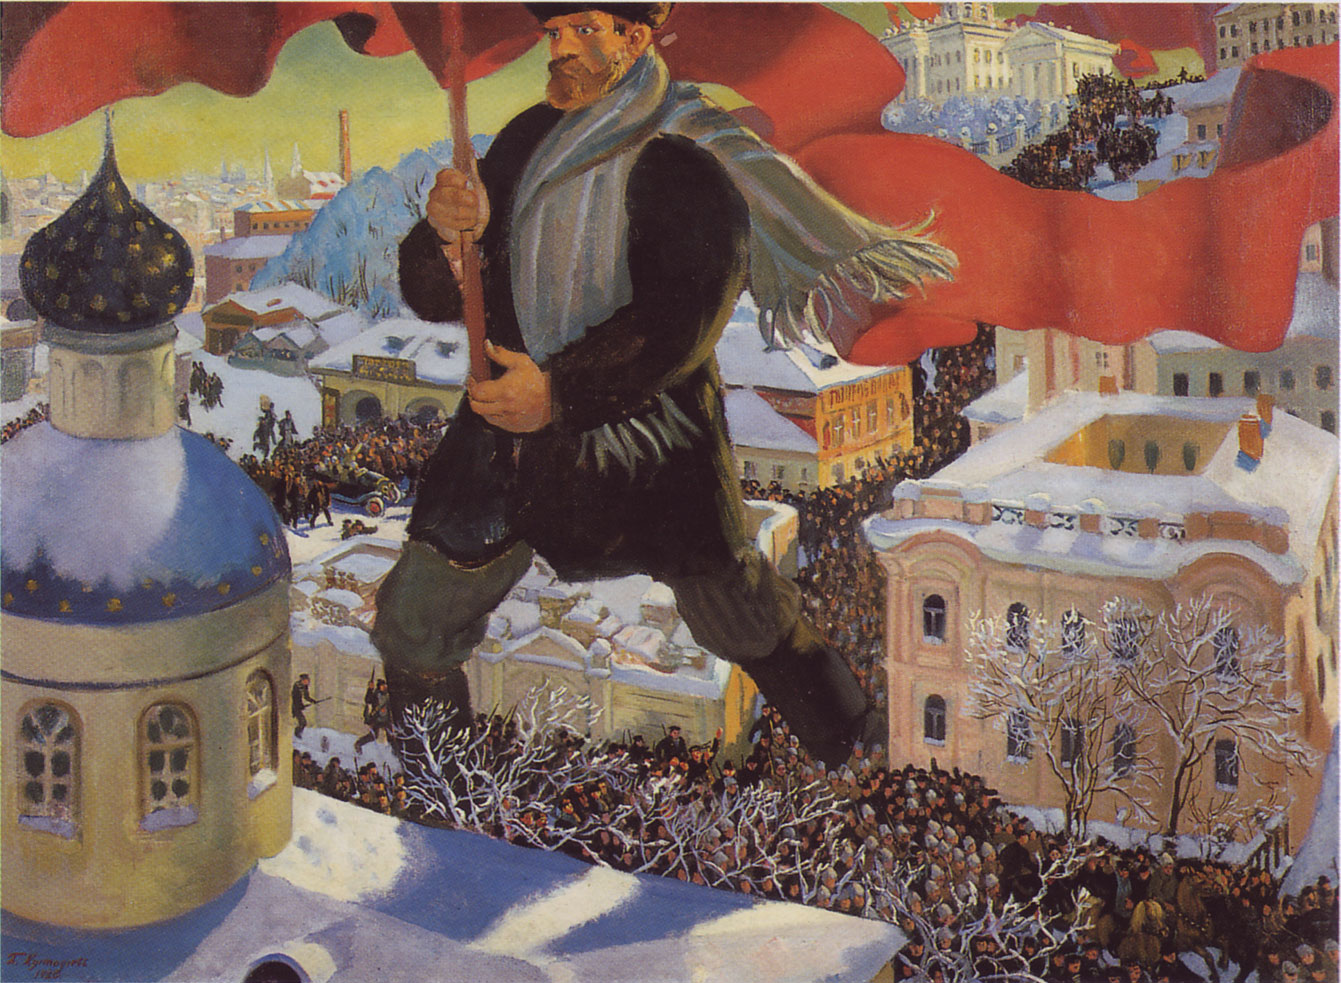 Der Bolschewik, Ölgemälde von Boris Kustodijew (1920) © Gemeinfrei